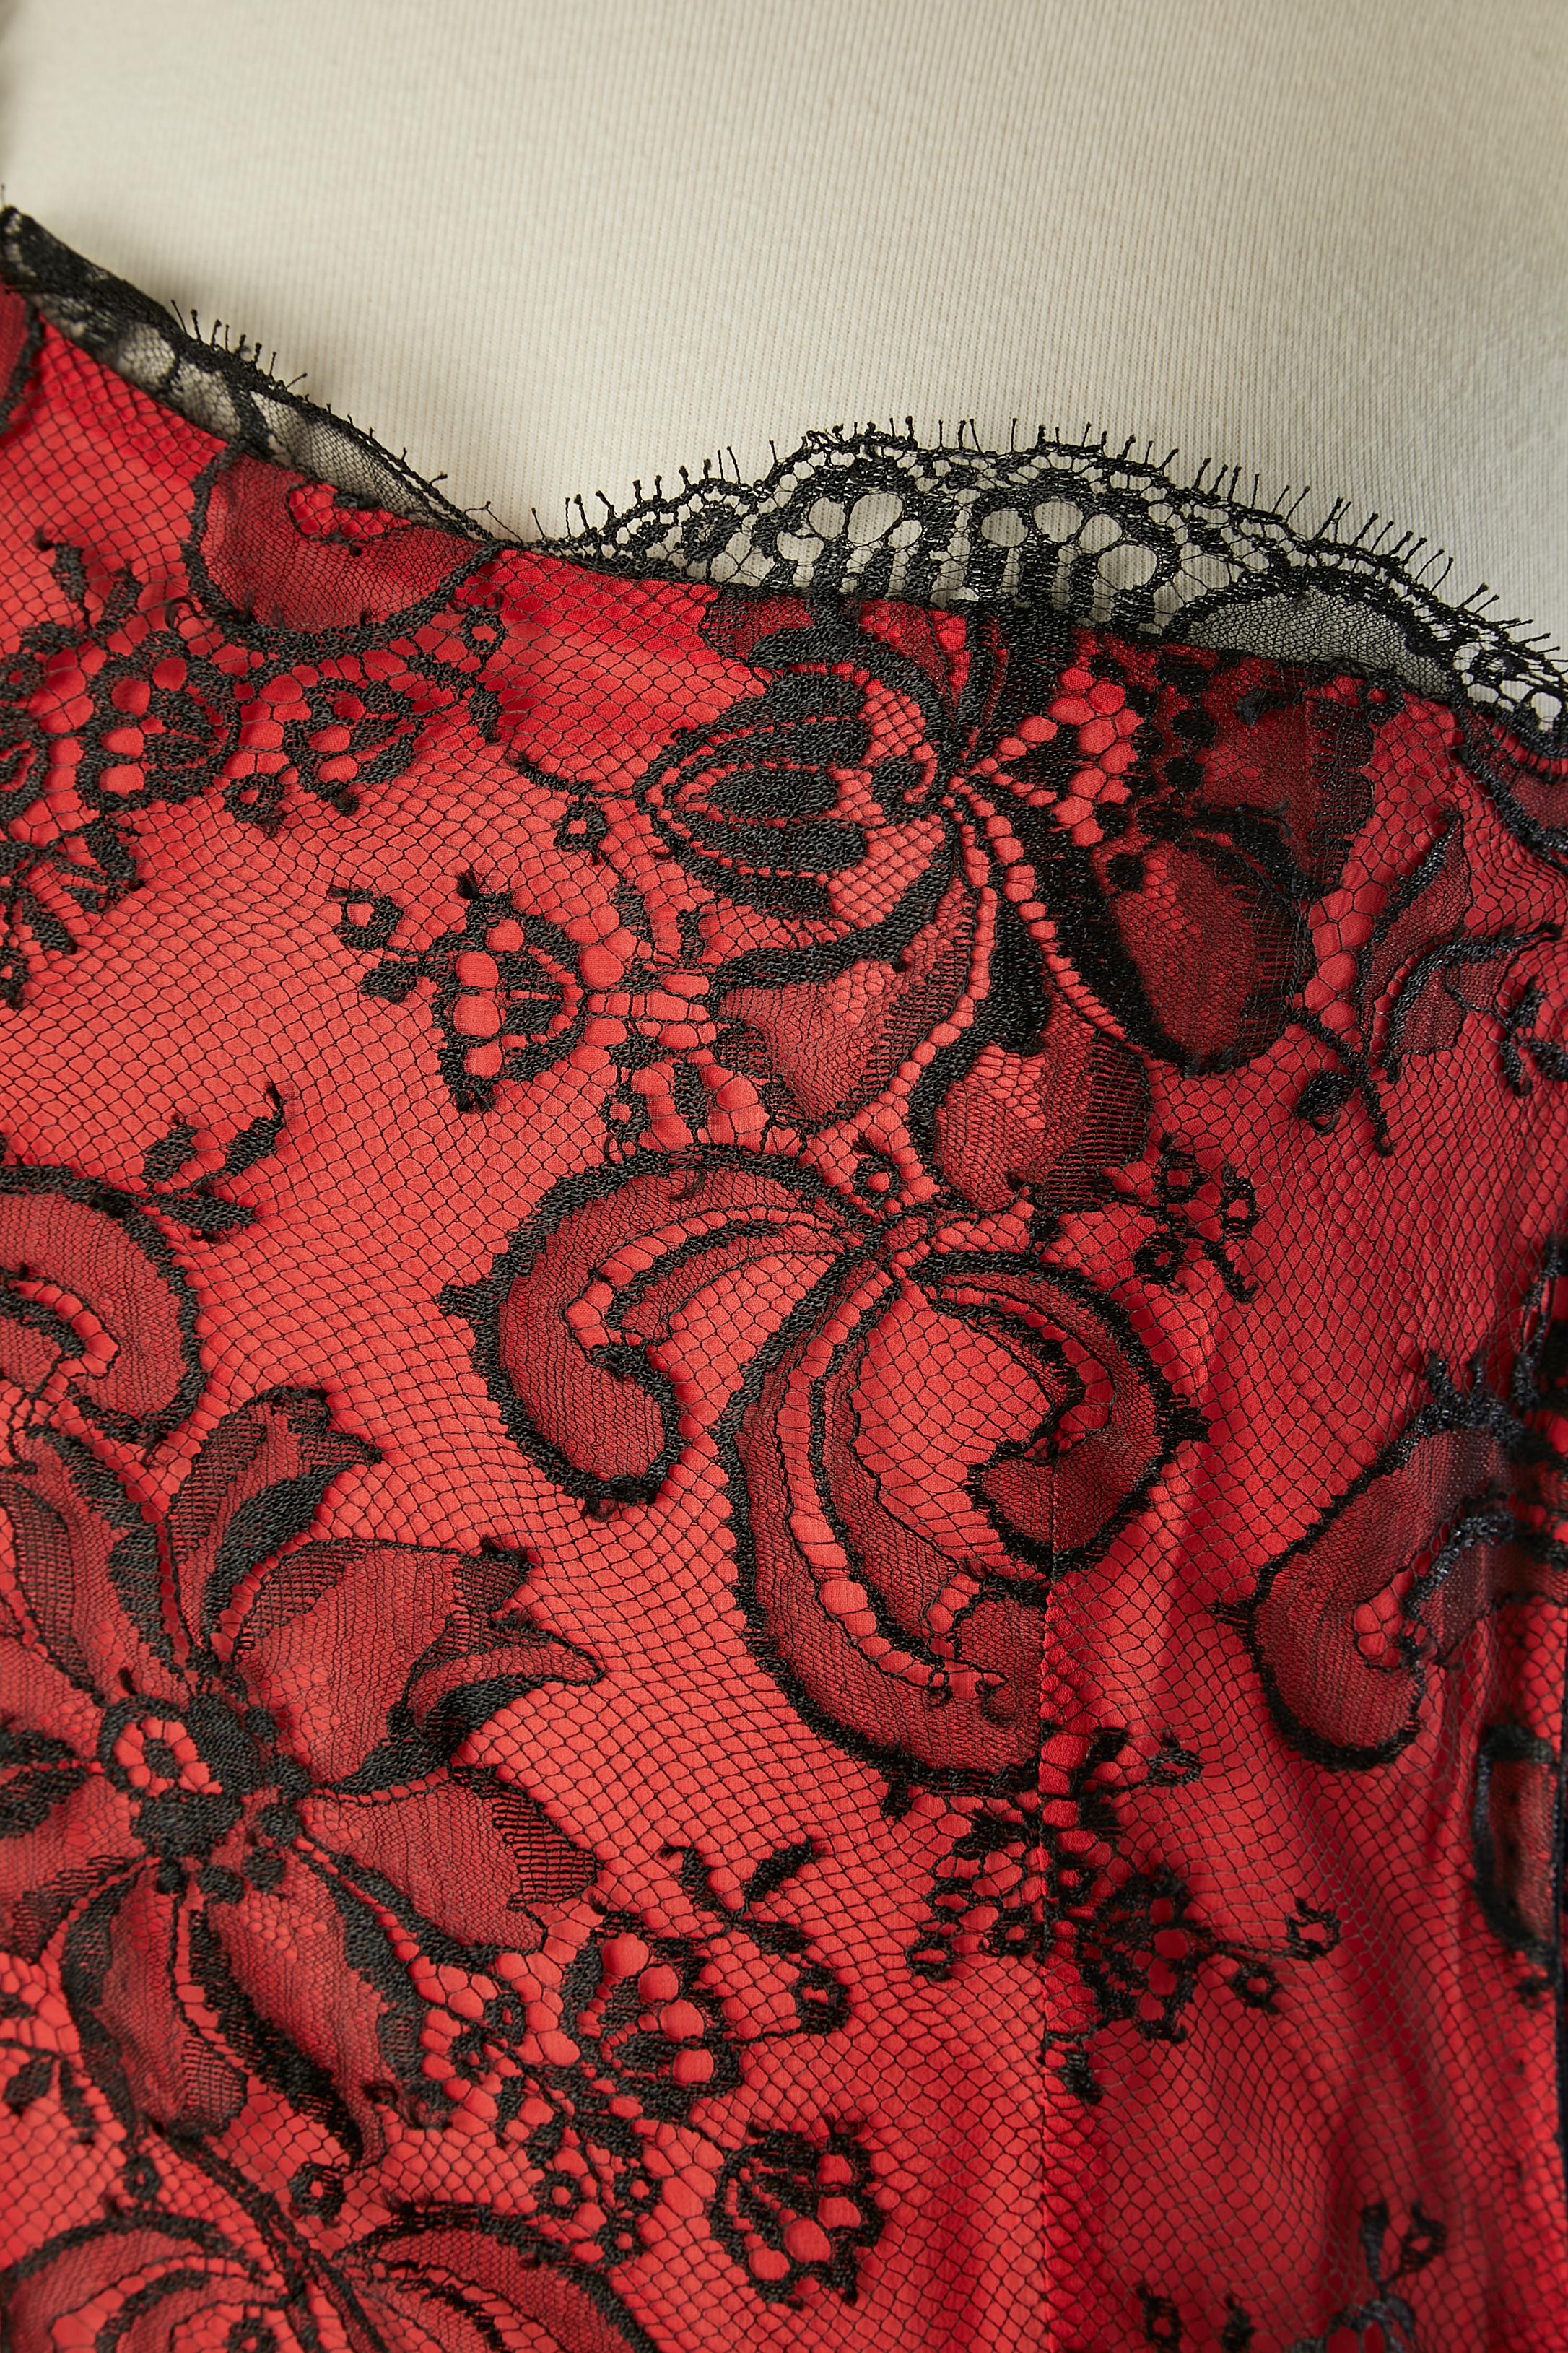 Rot-schwarzes asymmetrisches Cocktailkleid aus Seide mit Spitze. Reißverschluss auf der linken Seite und Haken & Ösen. Schwarze Seidenschleife auf der rechten Schulter.
SIZE S ( 10 auf dem Etikett geschrieben, aber unmöglich) 
Name des Kleides :